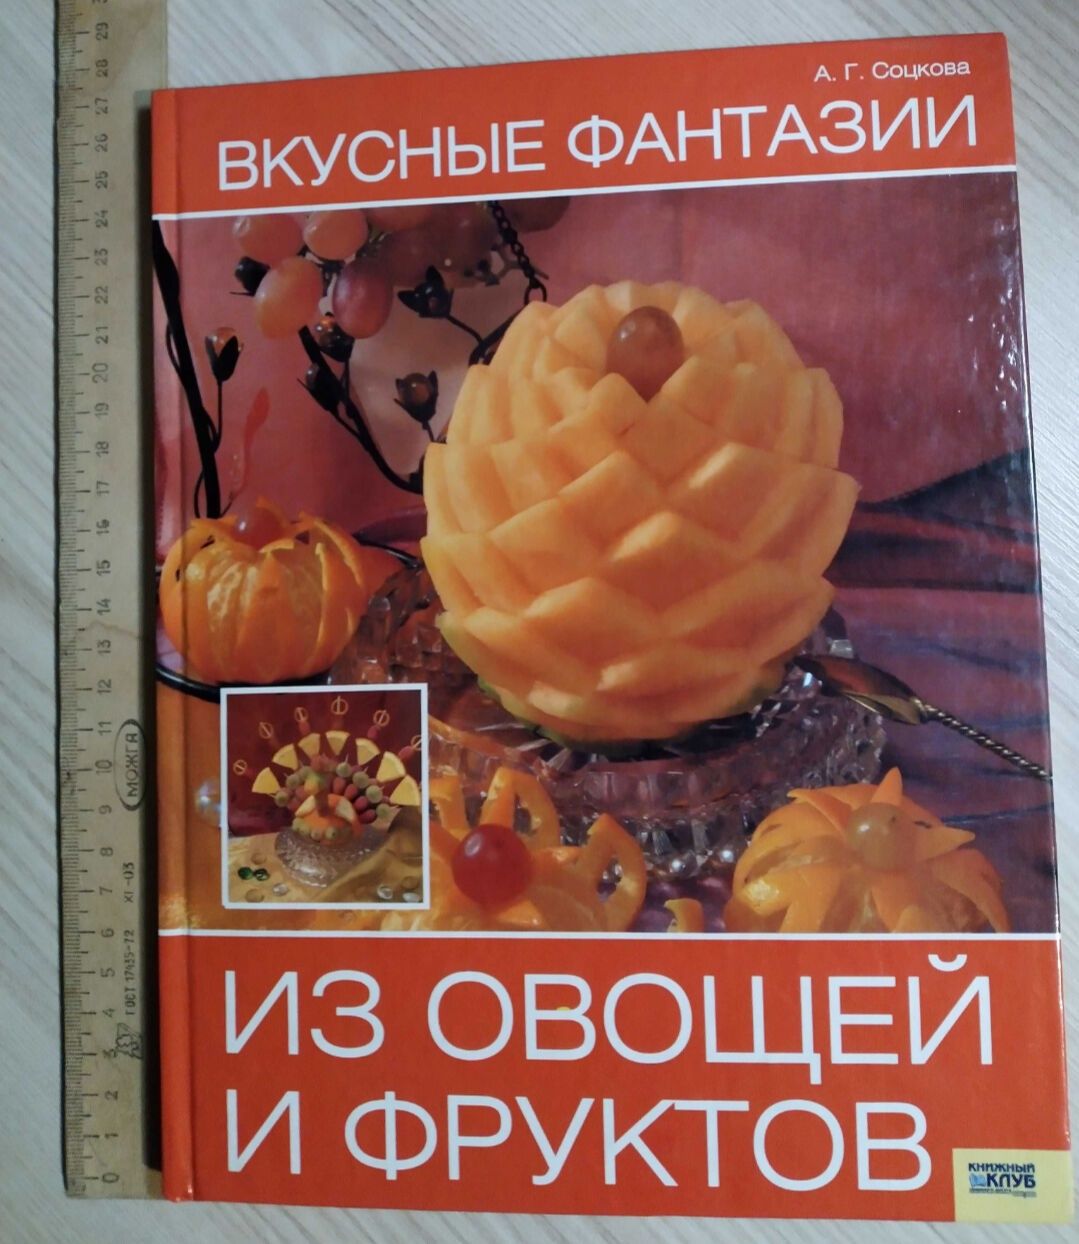 Вкусные виразка карвінг из овощей и фруктов Соцкова Карвинг  книга